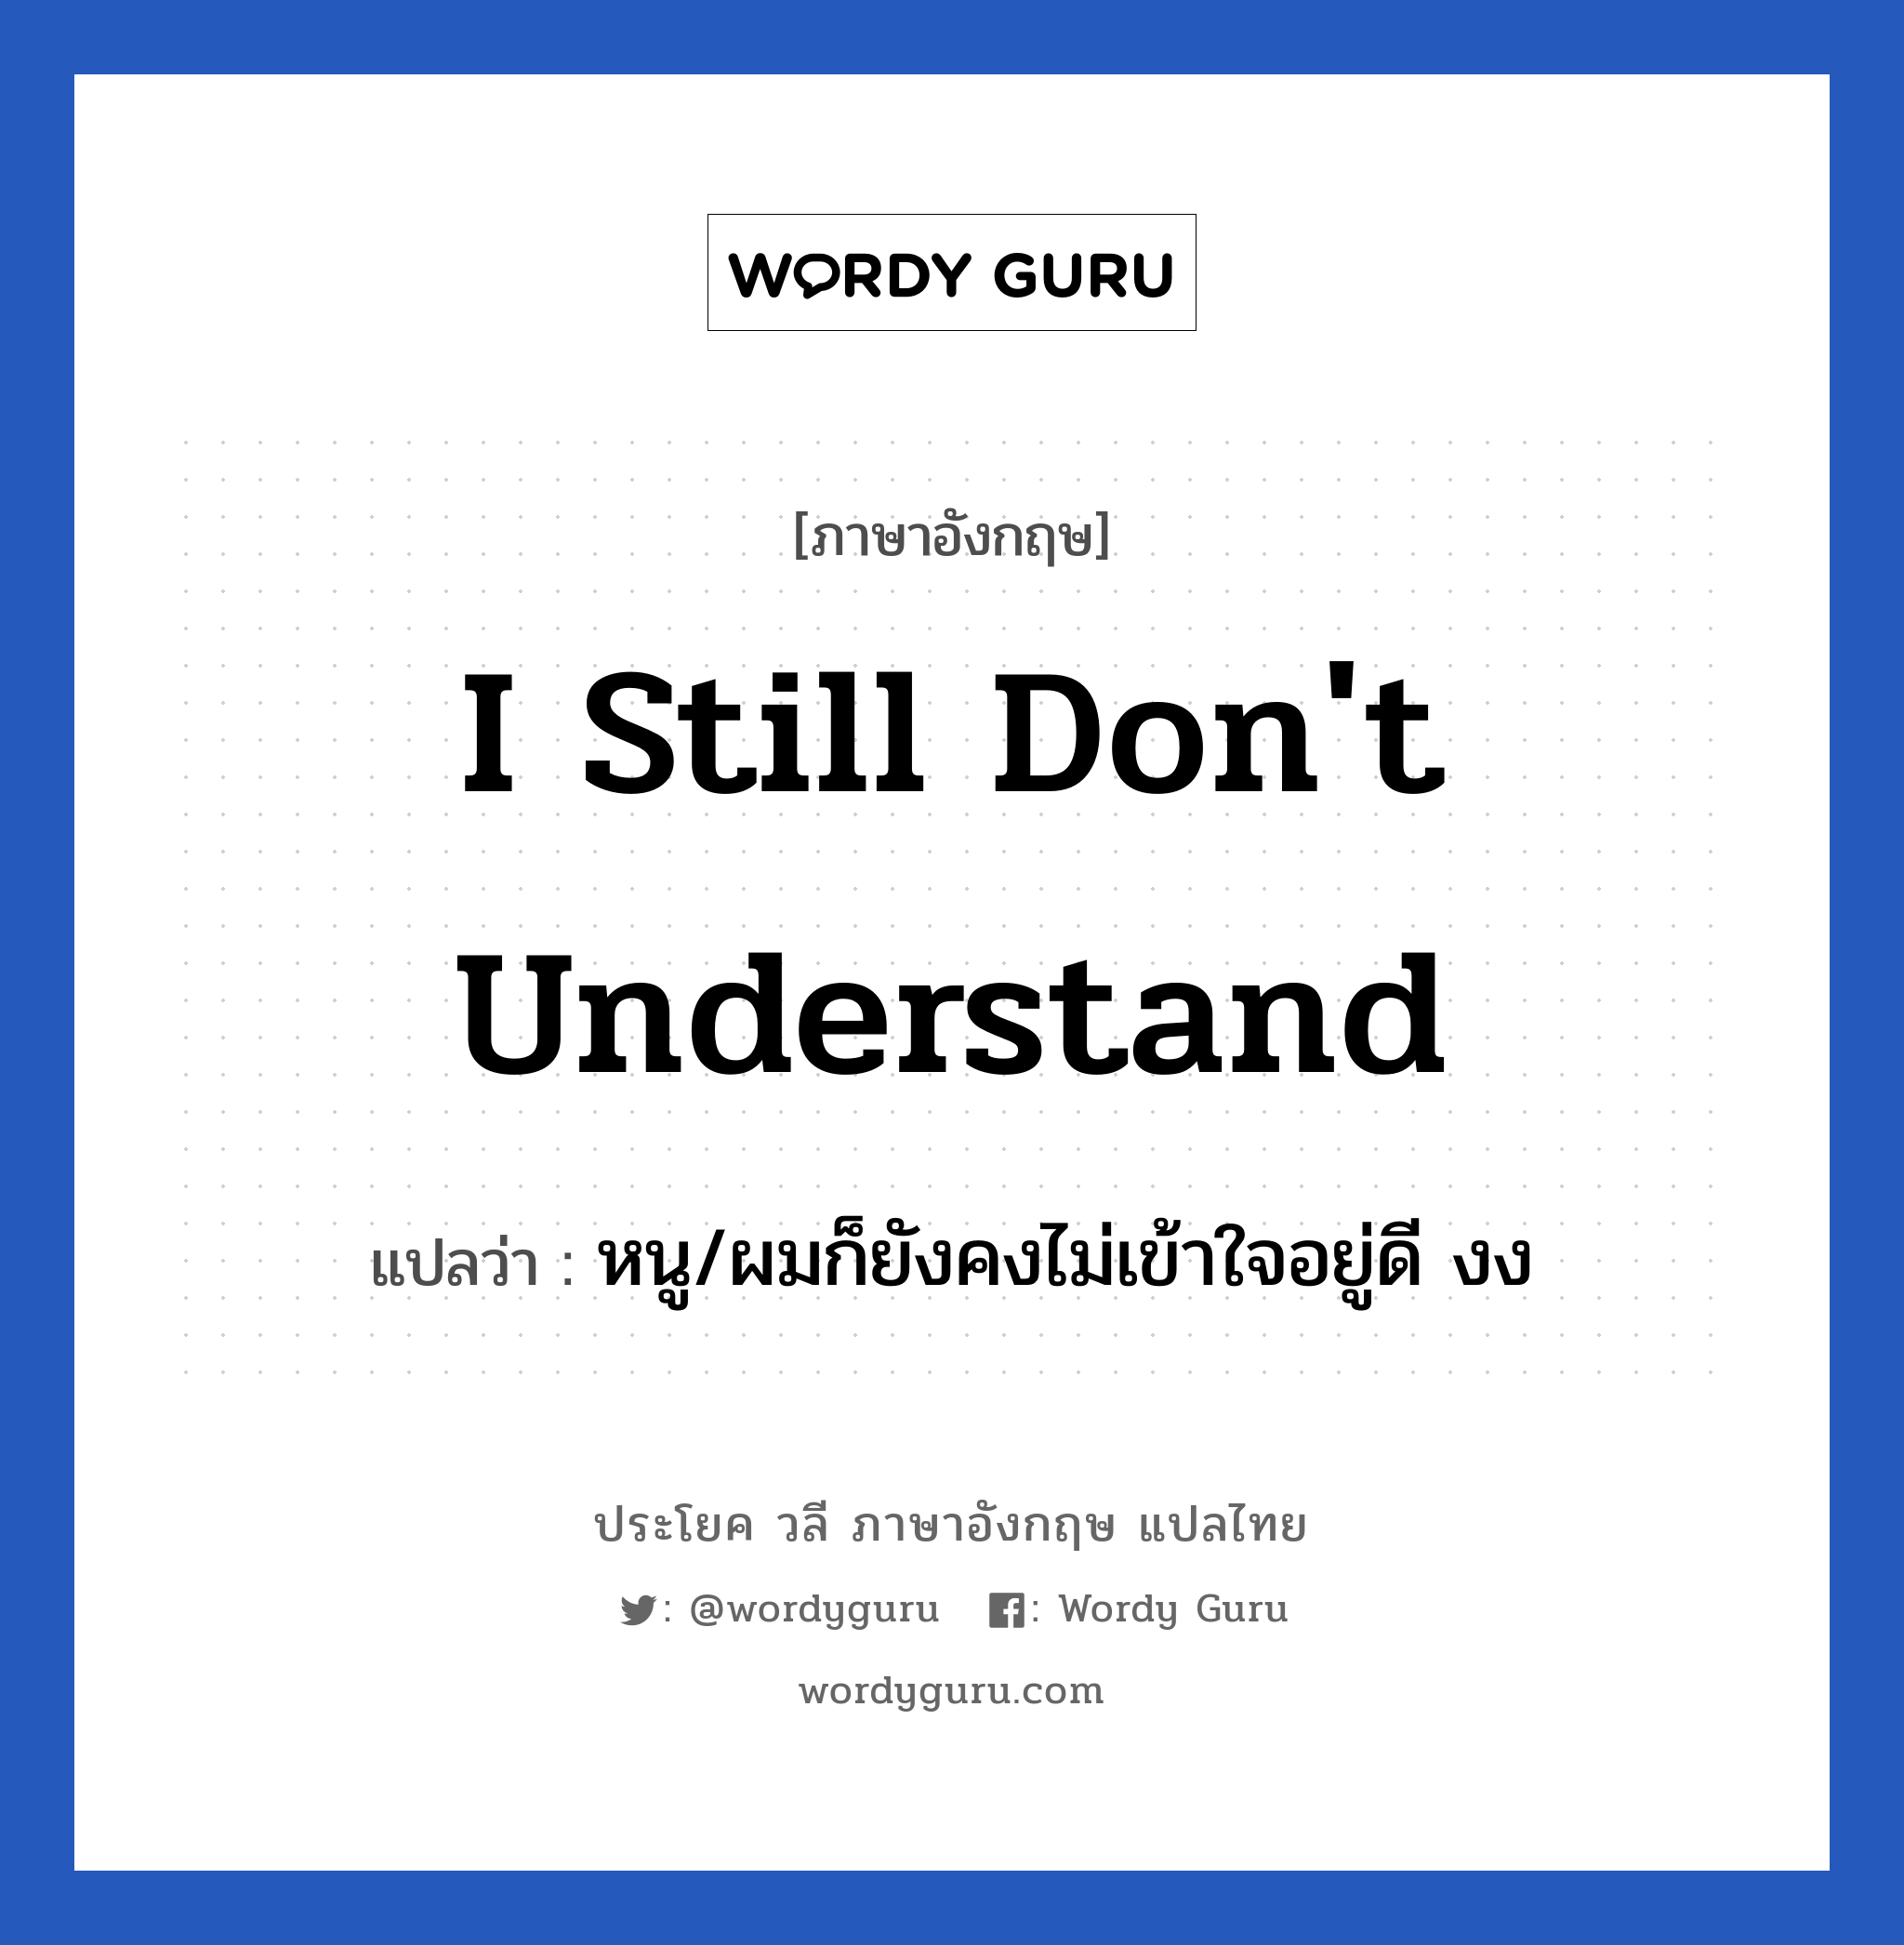 I still don't understand แปลว่า?, วลีภาษาอังกฤษ I still don't understand แปลว่า หนู/ผมก็ยังคงไม่เข้าใจอยู่ดี งง